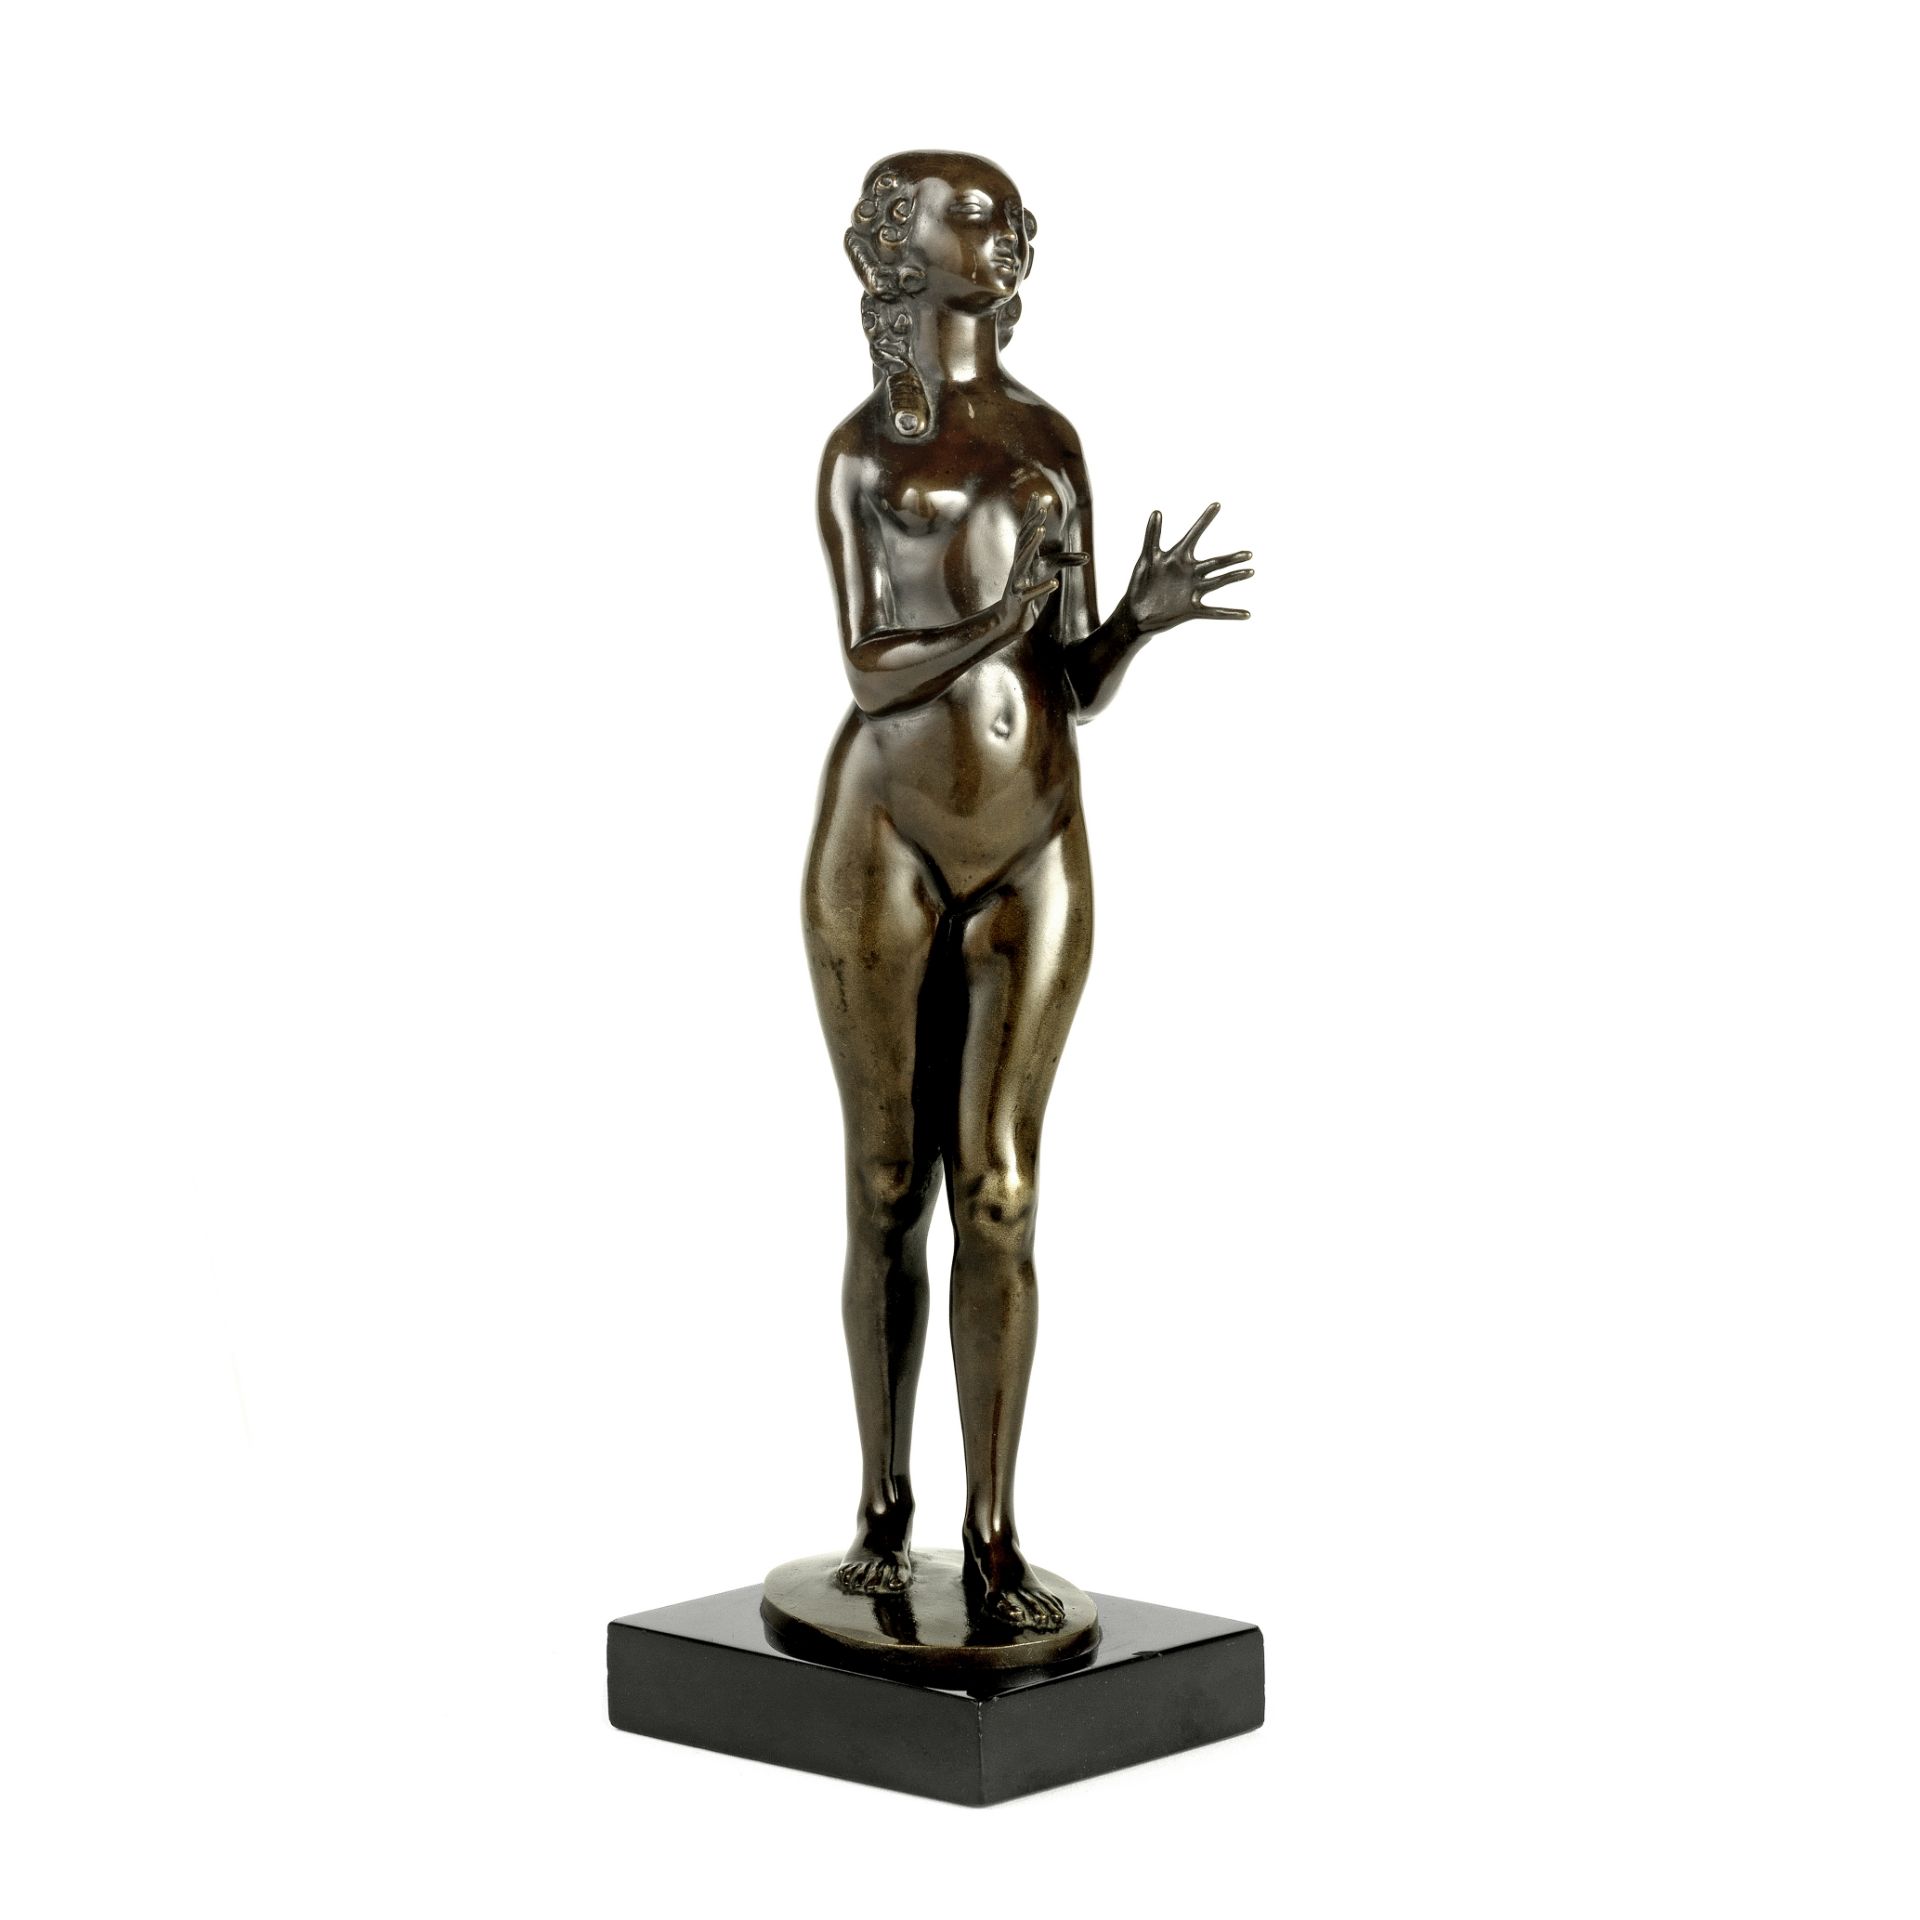 Paul Scheurich (1883-1945): Statuette en bronze repr&#233;sentant une chasseuse nue, circa 1912 ... - Image 2 of 3